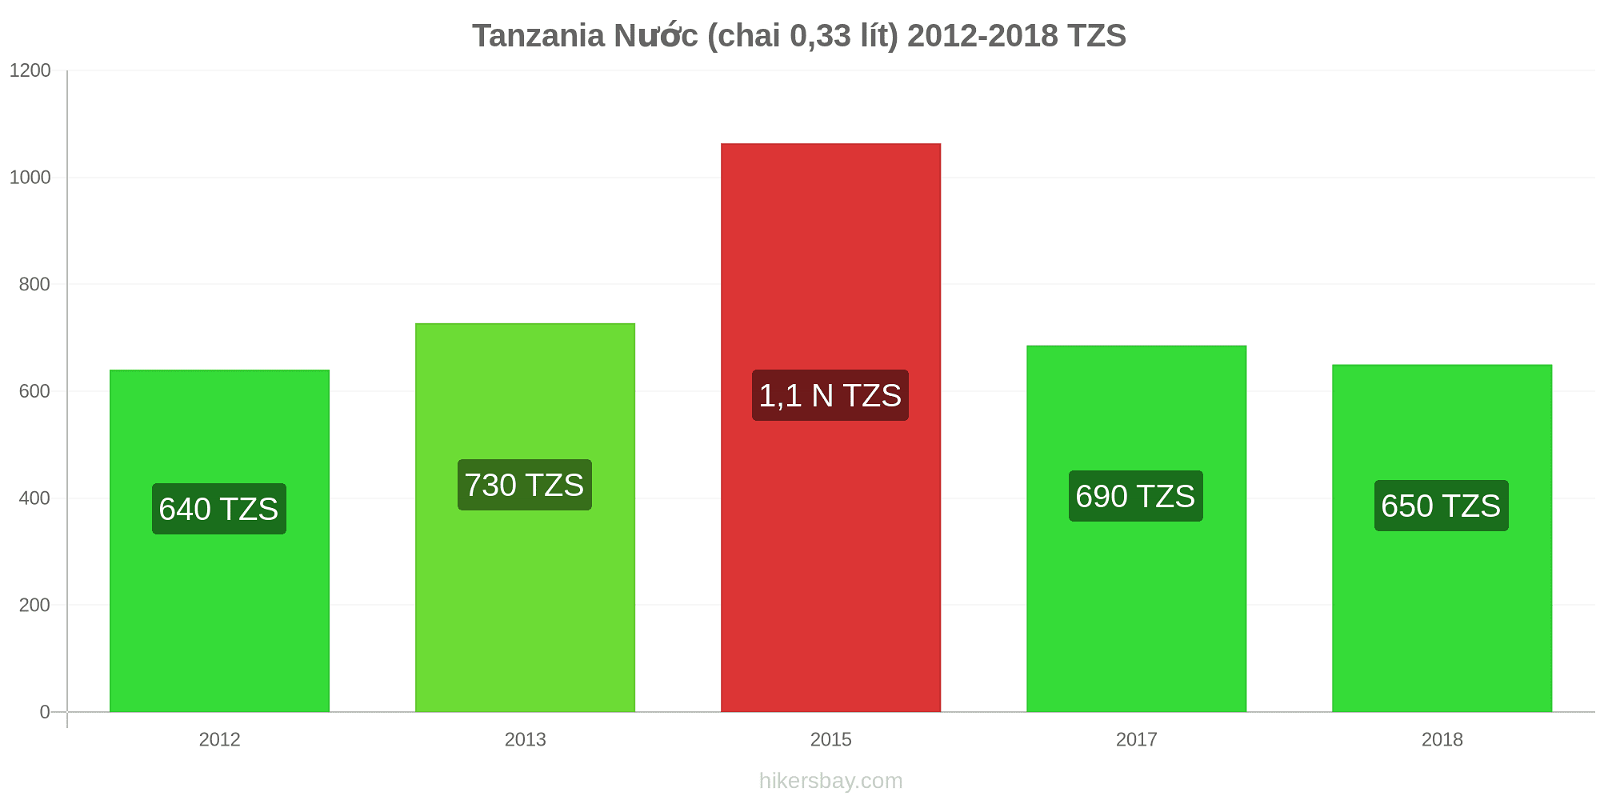 Tanzania thay đổi giá cả Nước (chai 0.33 lít) hikersbay.com